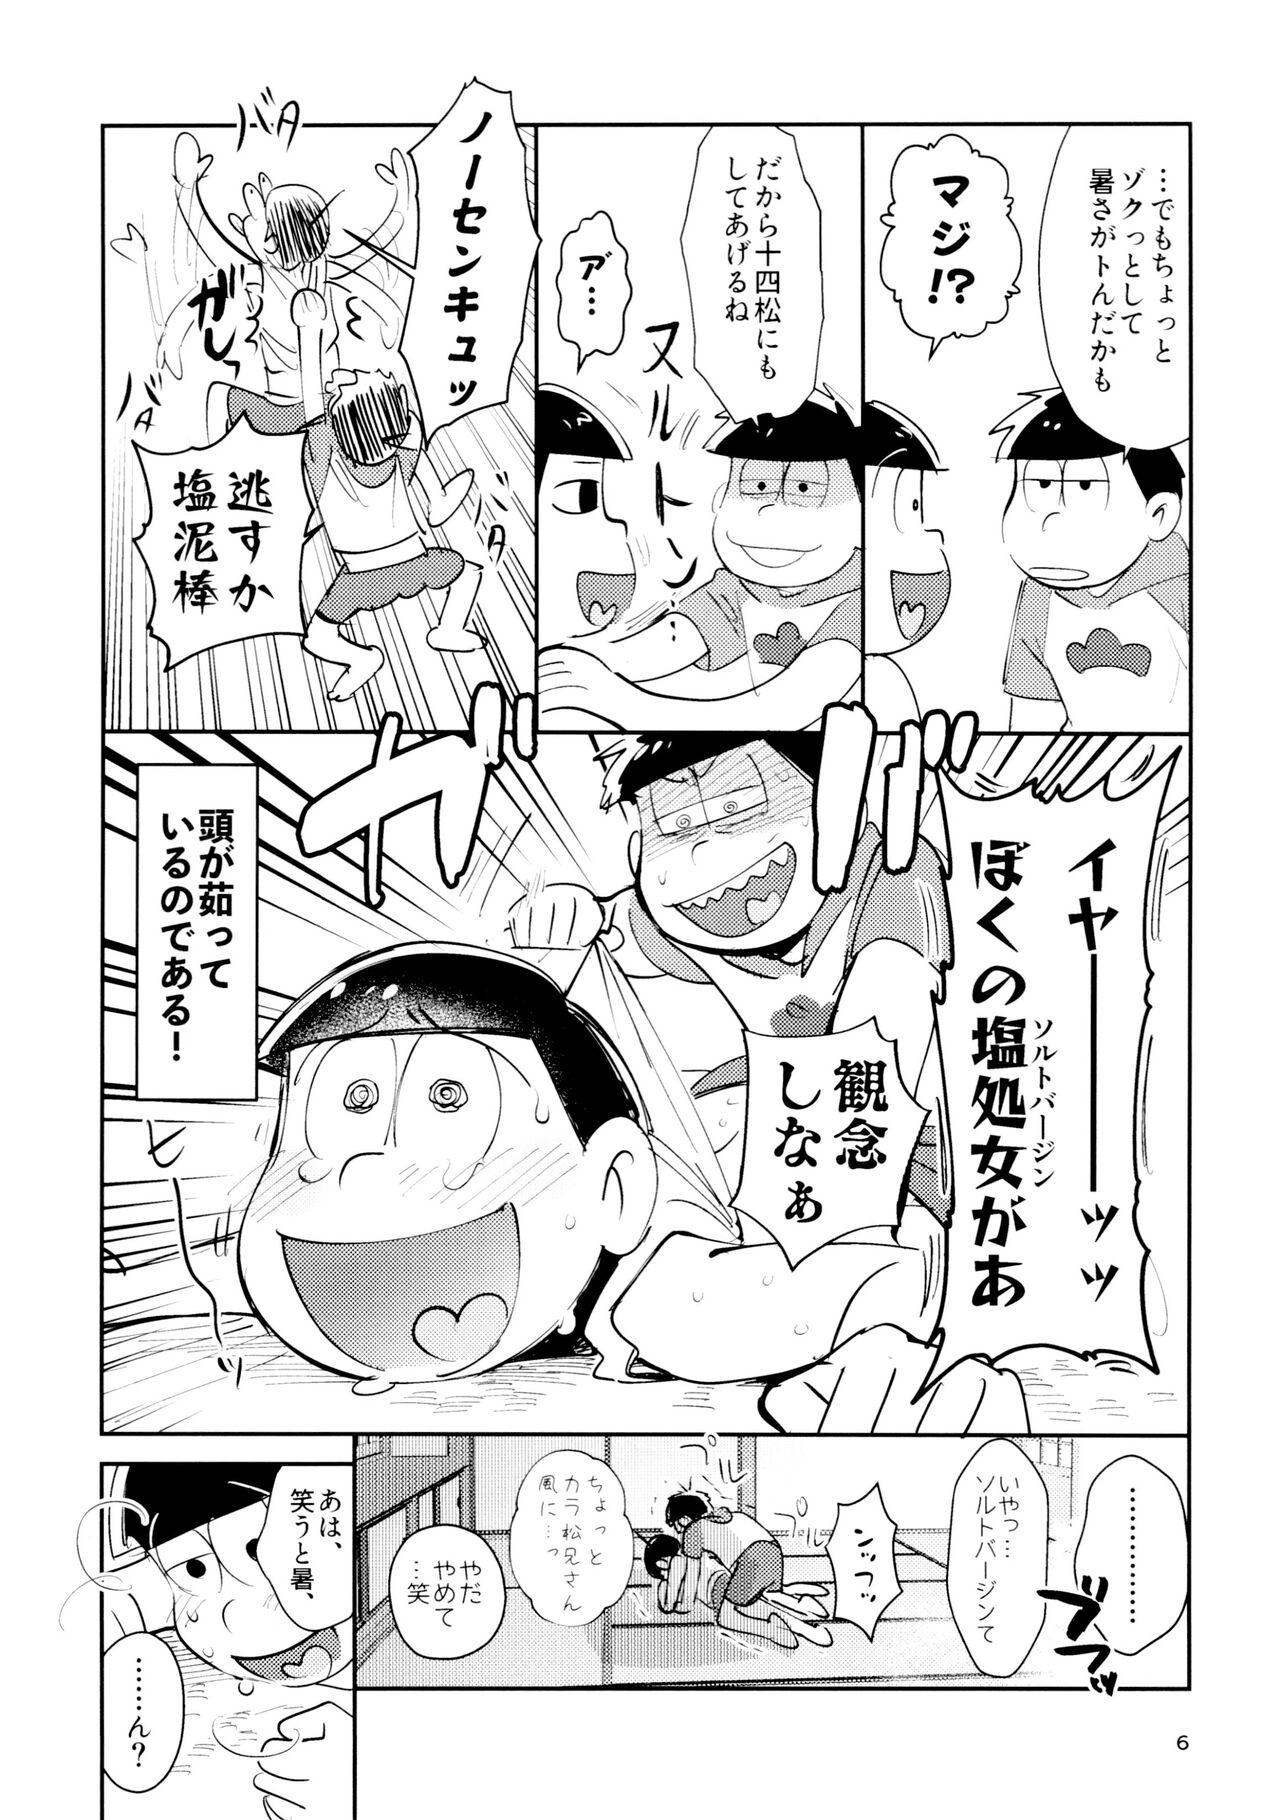 Ex Girlfriend Zatsu Shinkiro's - Osomatsu san Twistys - Page 6